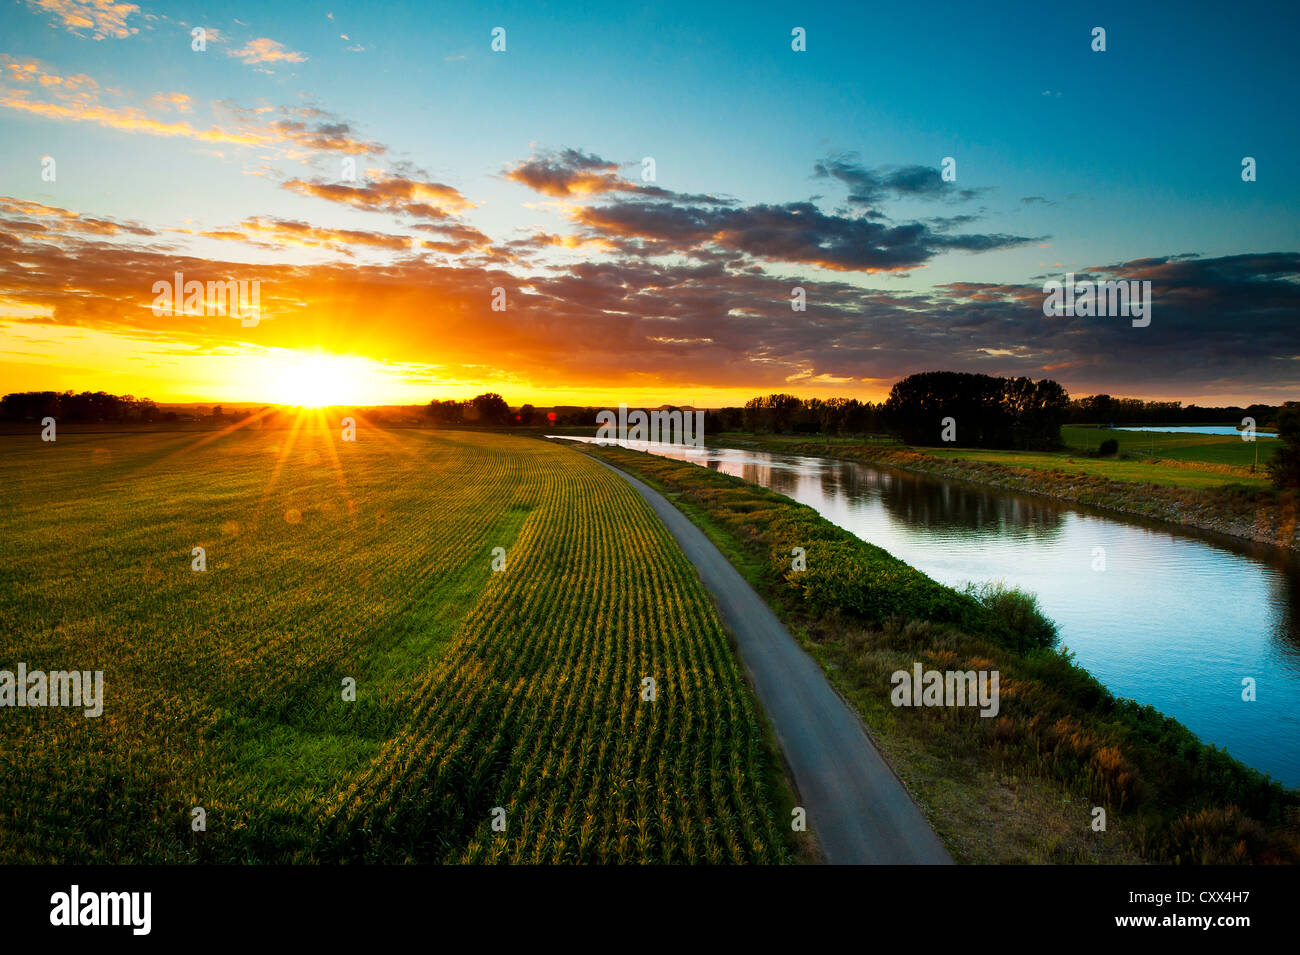 Coucher de soleil dans la région de la rivière Muese à Limburg, Pays-Bas Banque D'Images